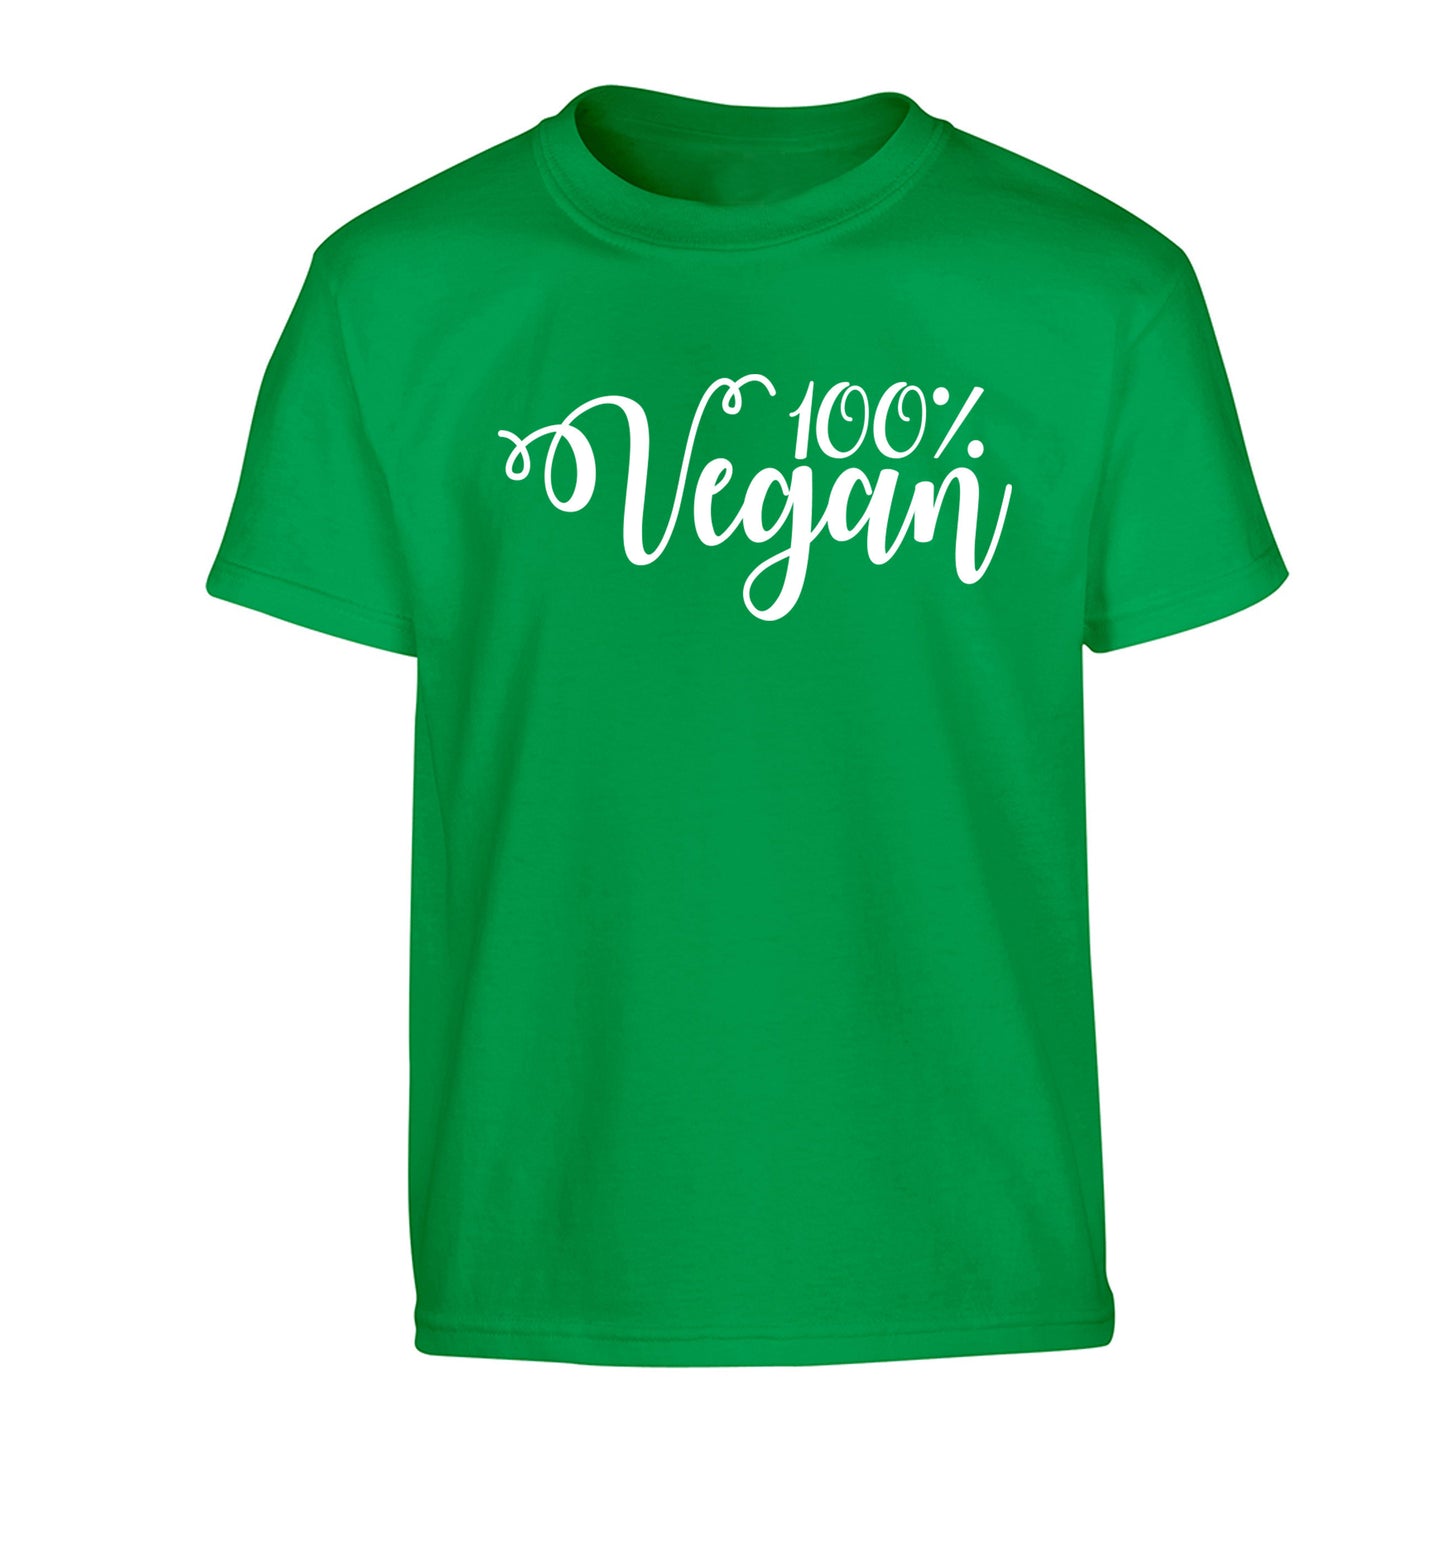 100% Vegan Children's green Tshirt 12-14 Years